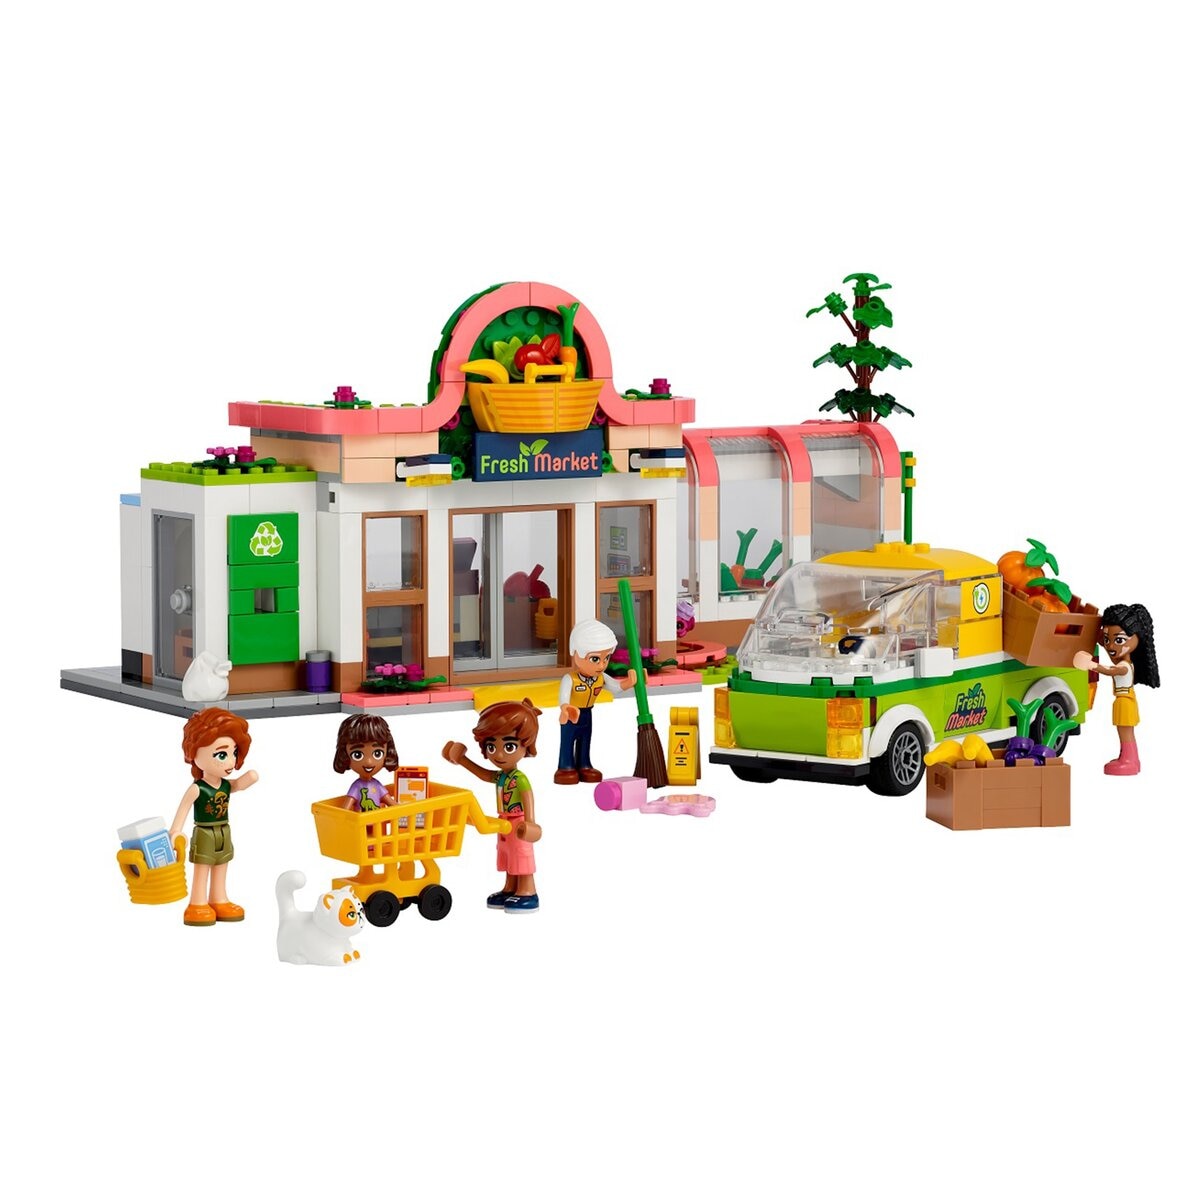 LEGO Friends系列 有機雜貨店 41729